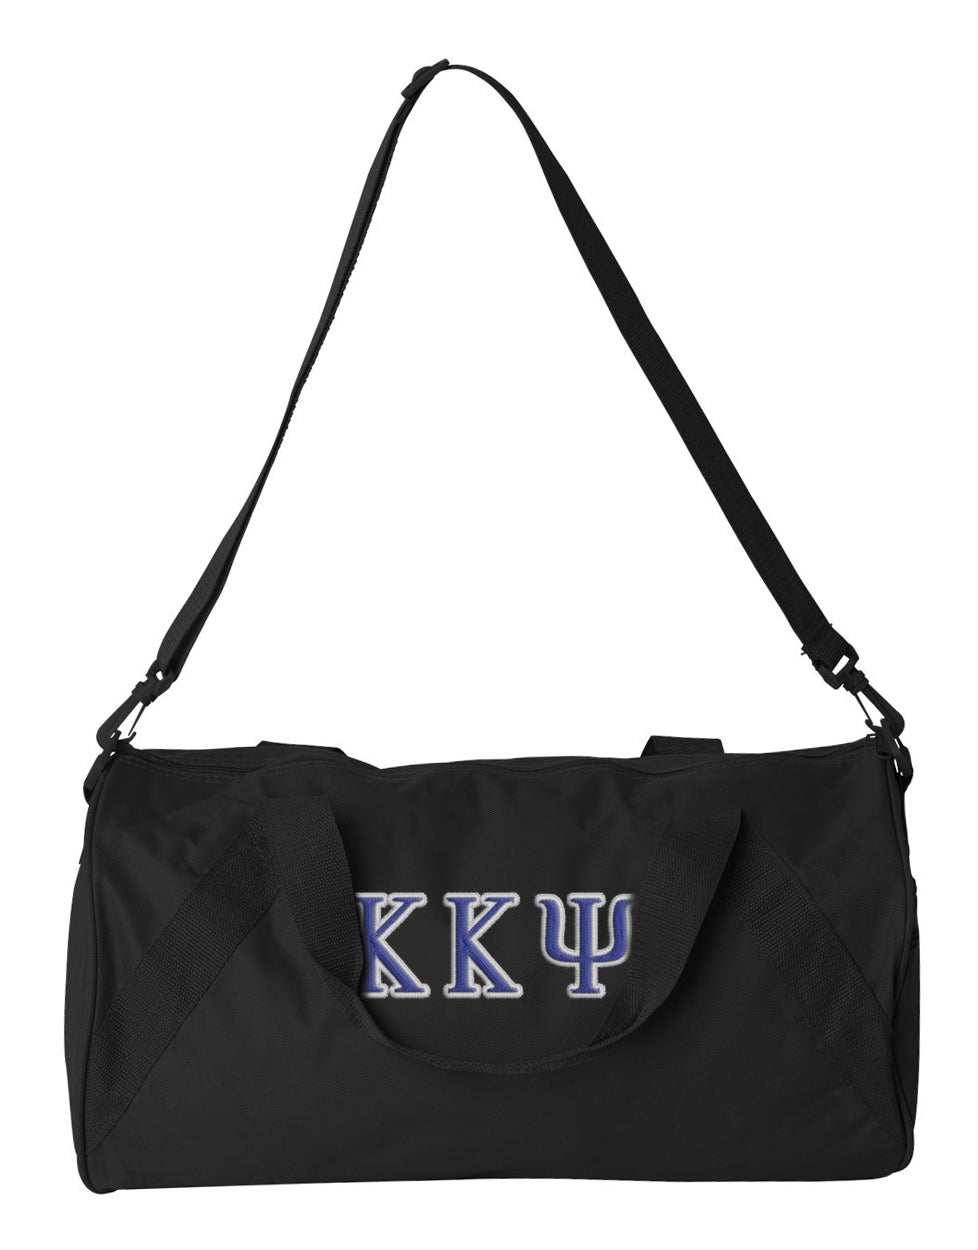 Kappa Kappa Psi Embroidered Duffel Bag